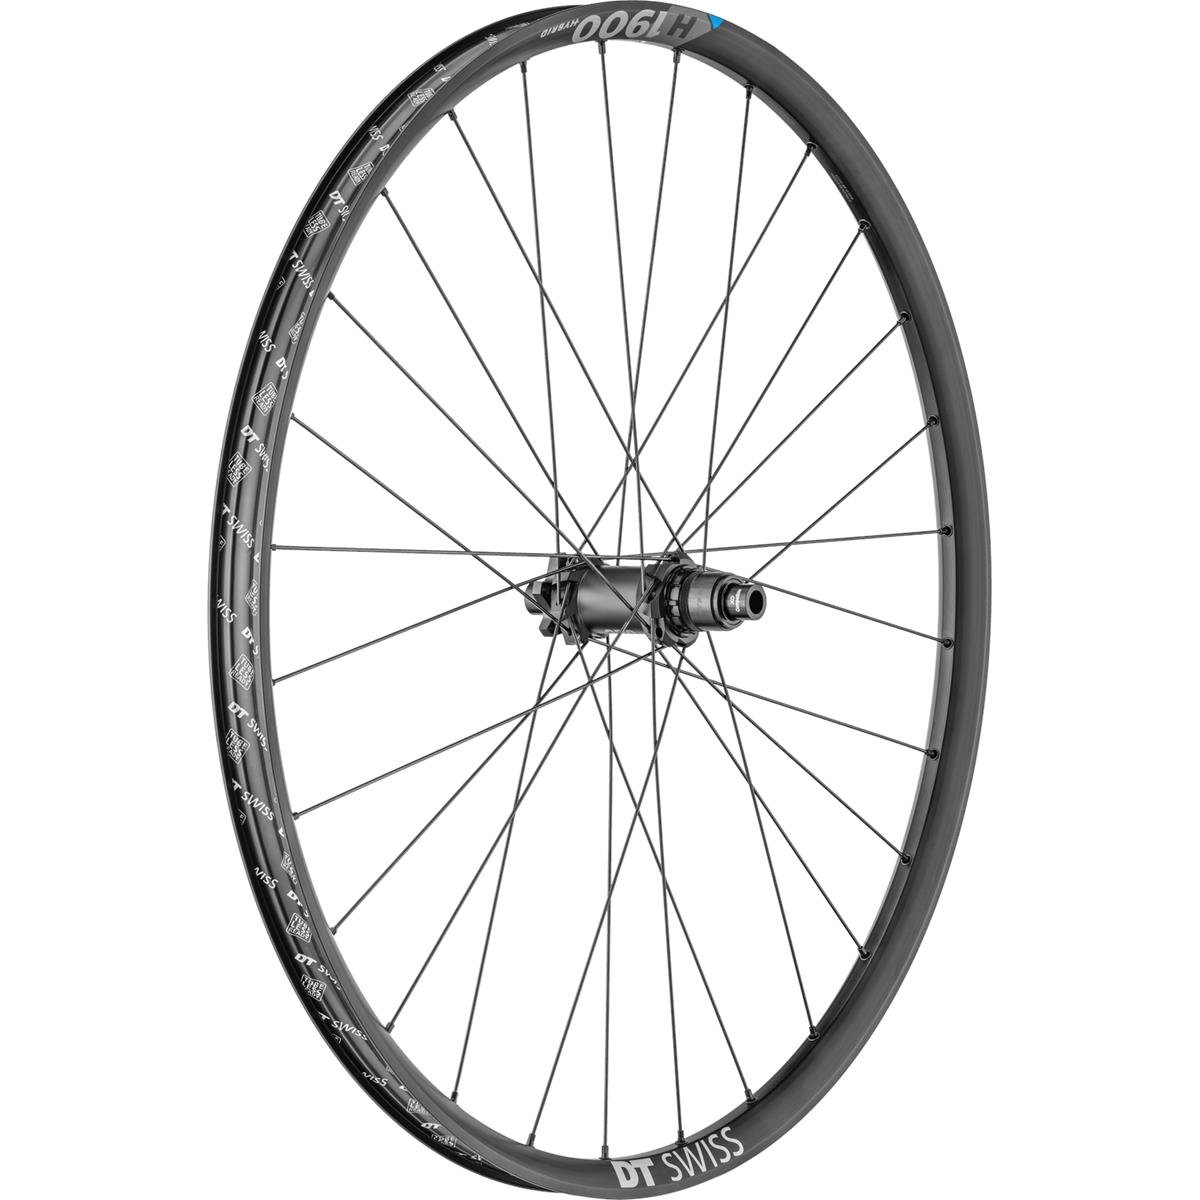 DT Swiss Wheel H 1900 Spline Rear, 27.5 Inches, Aluminum, 12x148 mm TA Boost, IS 6-Bolt, Sram XD, 30 mm